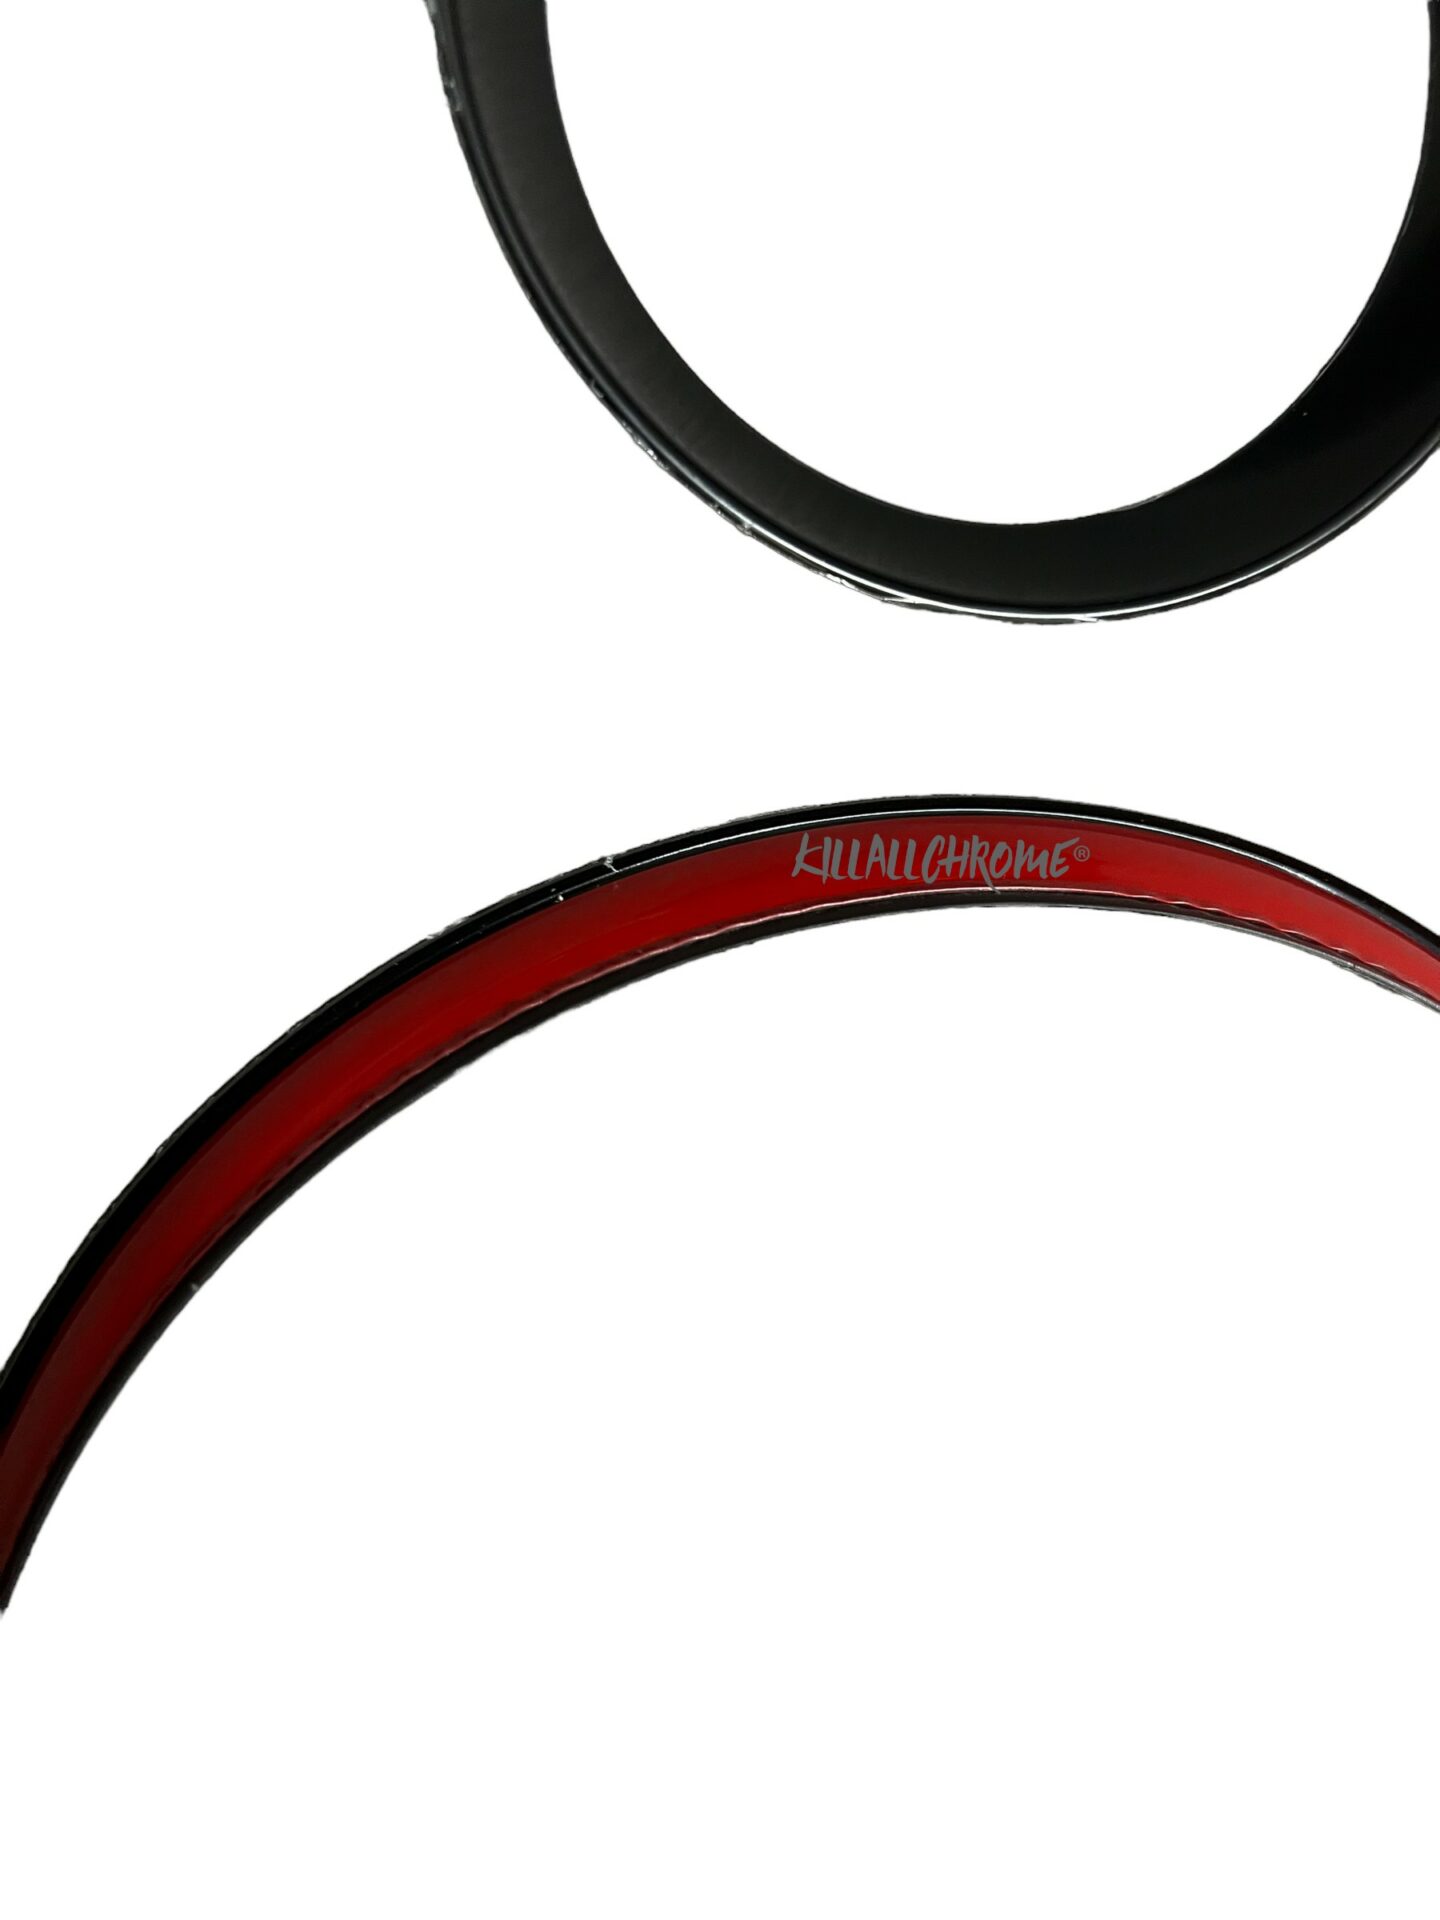 Red Interior Dashboard Ring Cover Trim Accessory For BMW MINI Cooper F55  F56 F57